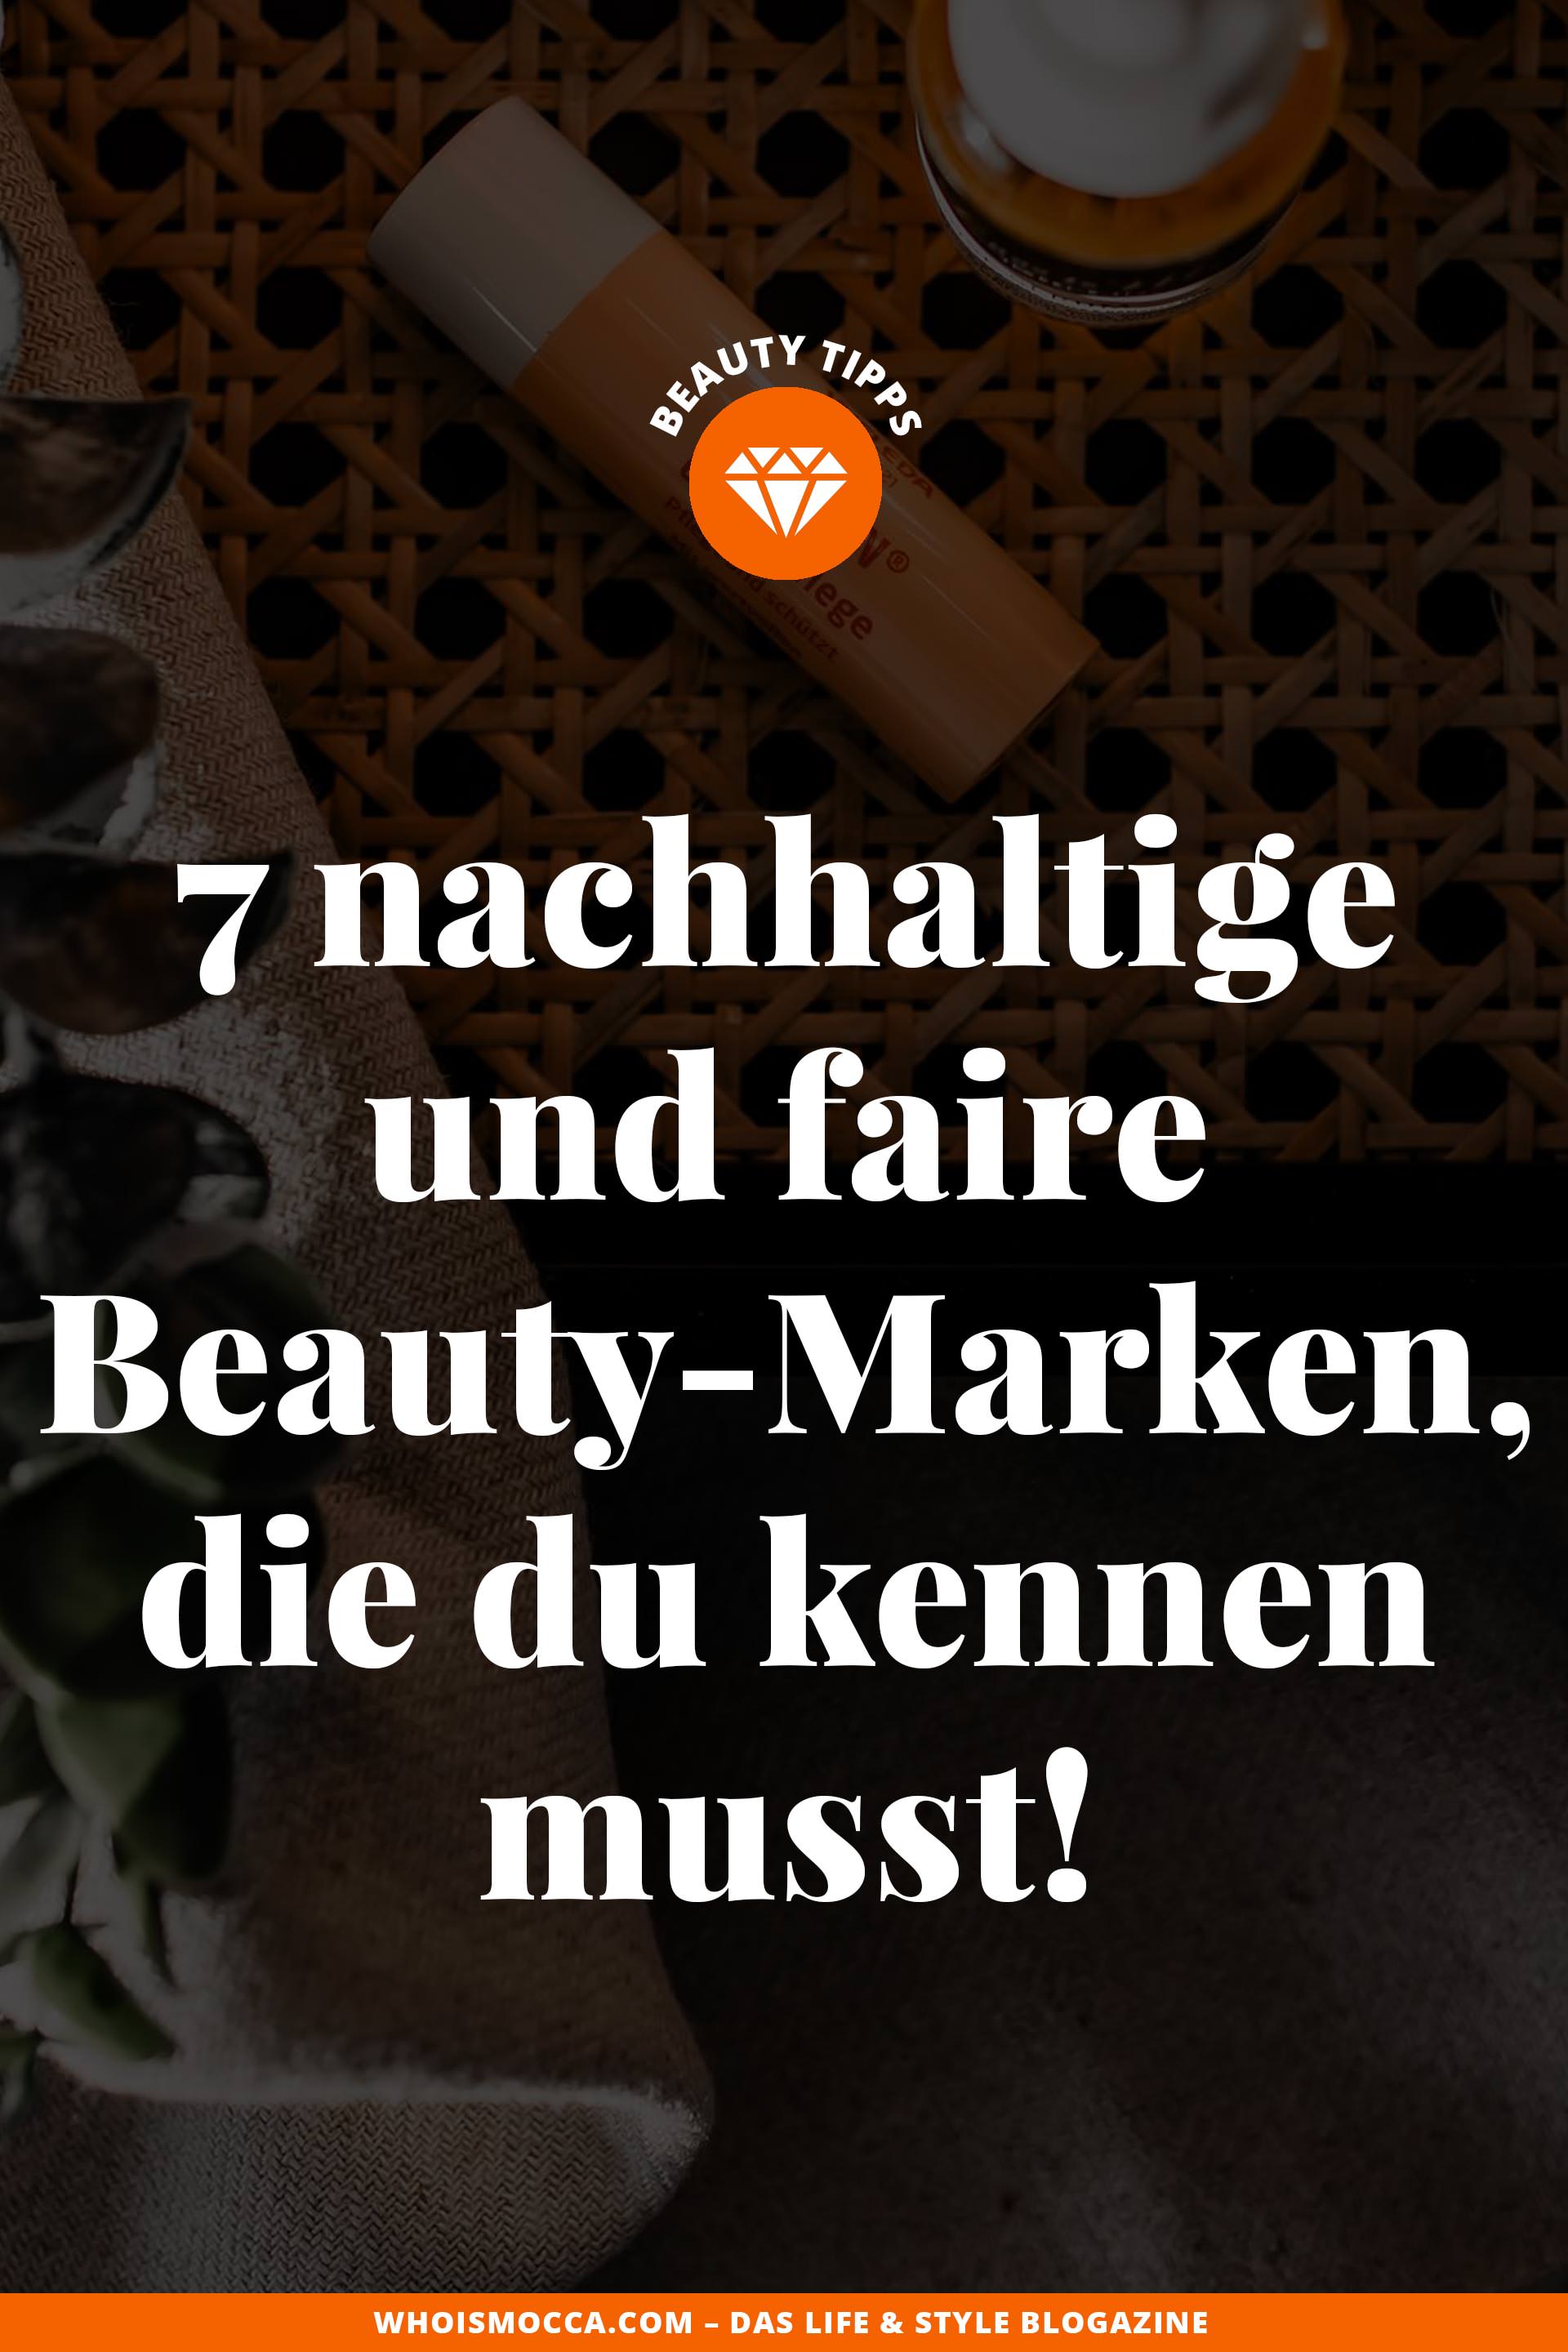 Am Beauty Blog habe ich heute 7 nachhaltige und faire Beauty-Marken aufgelistet, die du kennen musst! Ich verrate dir die wichtigsten Infos der Beauty-Brands und stelle dir meine Lieblingsprodukte vor. www.whoismocca.com #fairbeauty #nachhaltigkeit #beautymarken #beautyprodukte